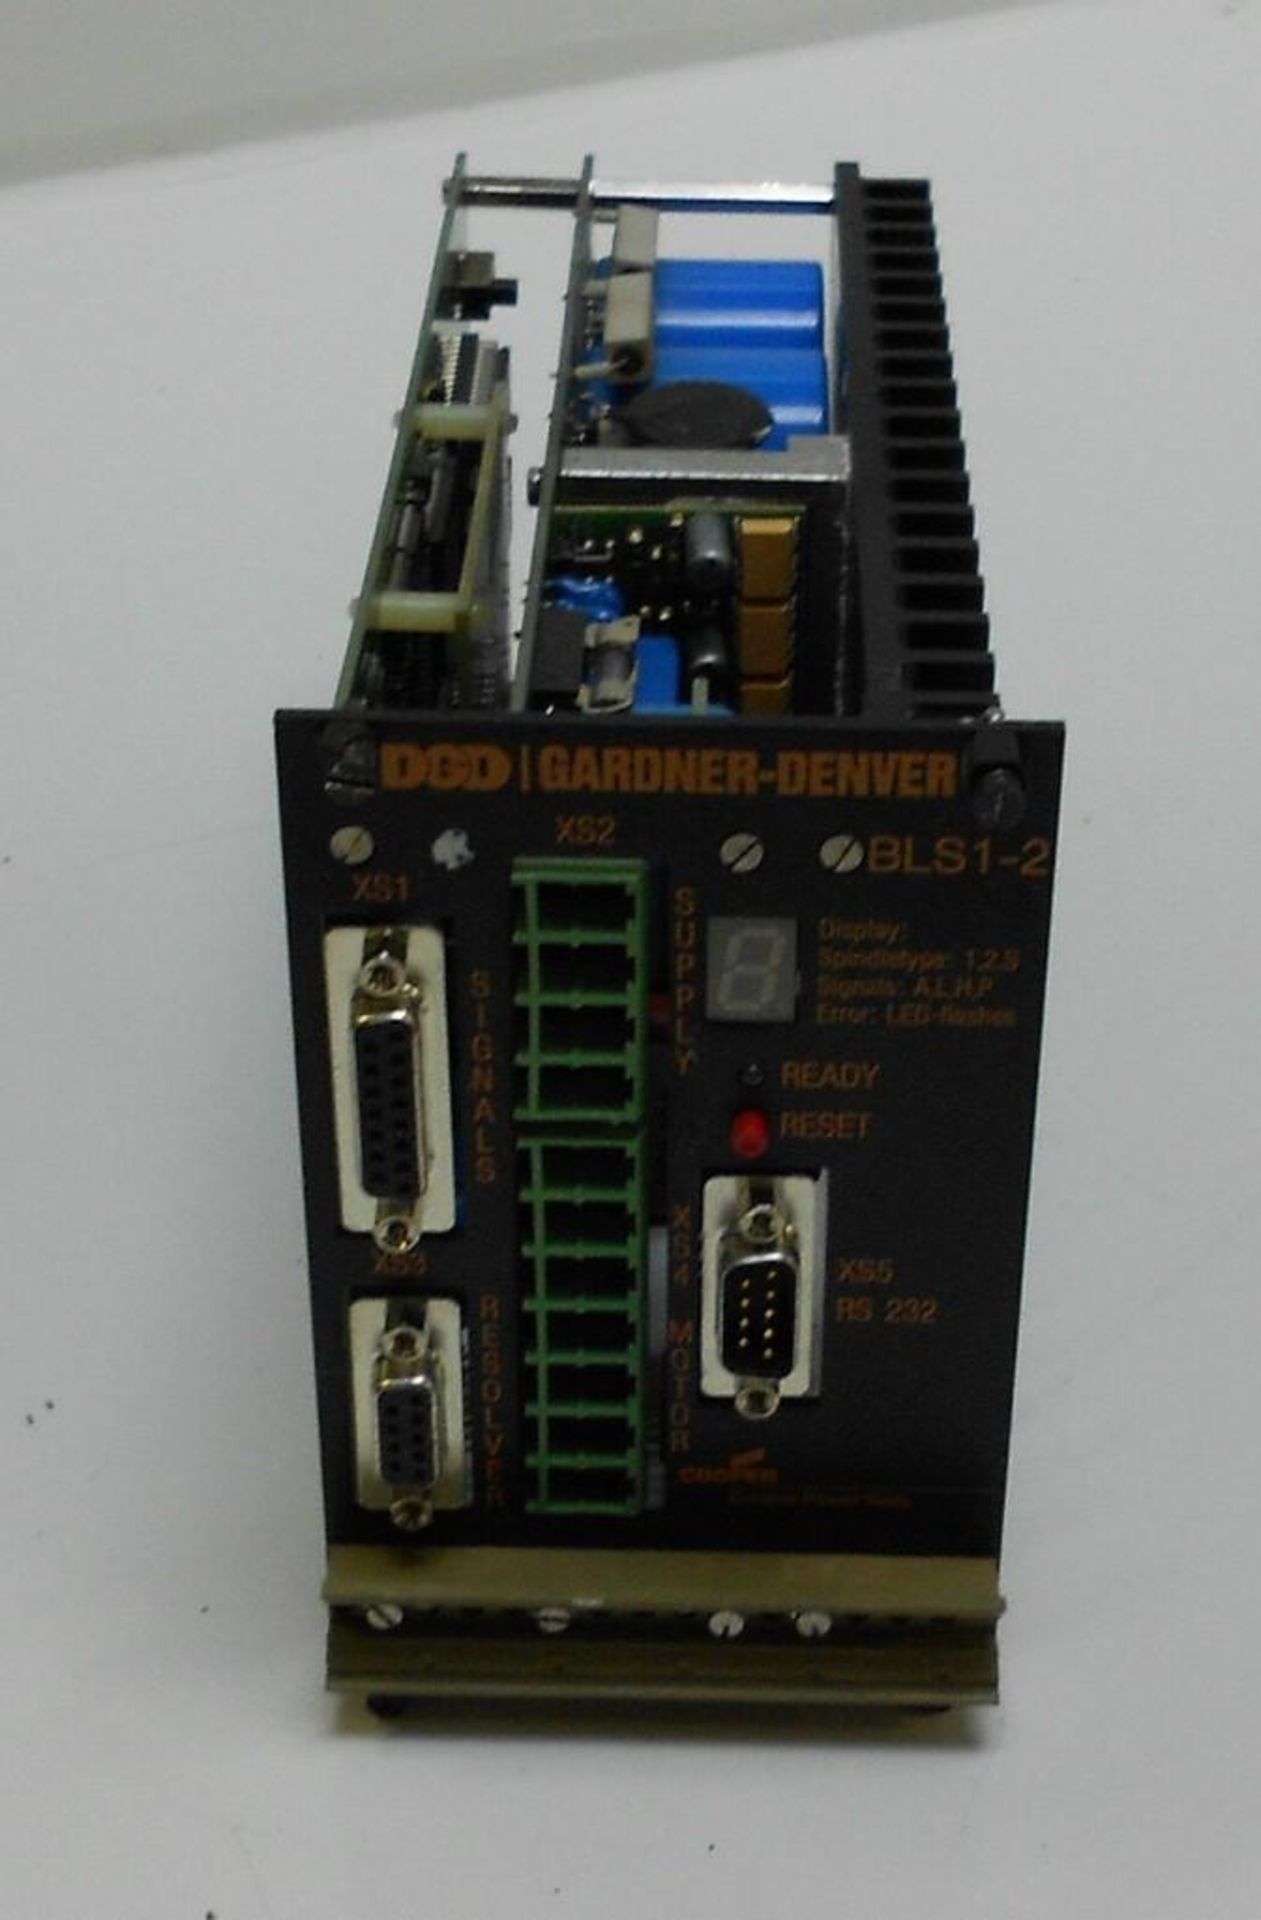 Lot of (65) DGD Gardner Denver Servo Controls, # BLS1-2, 960011